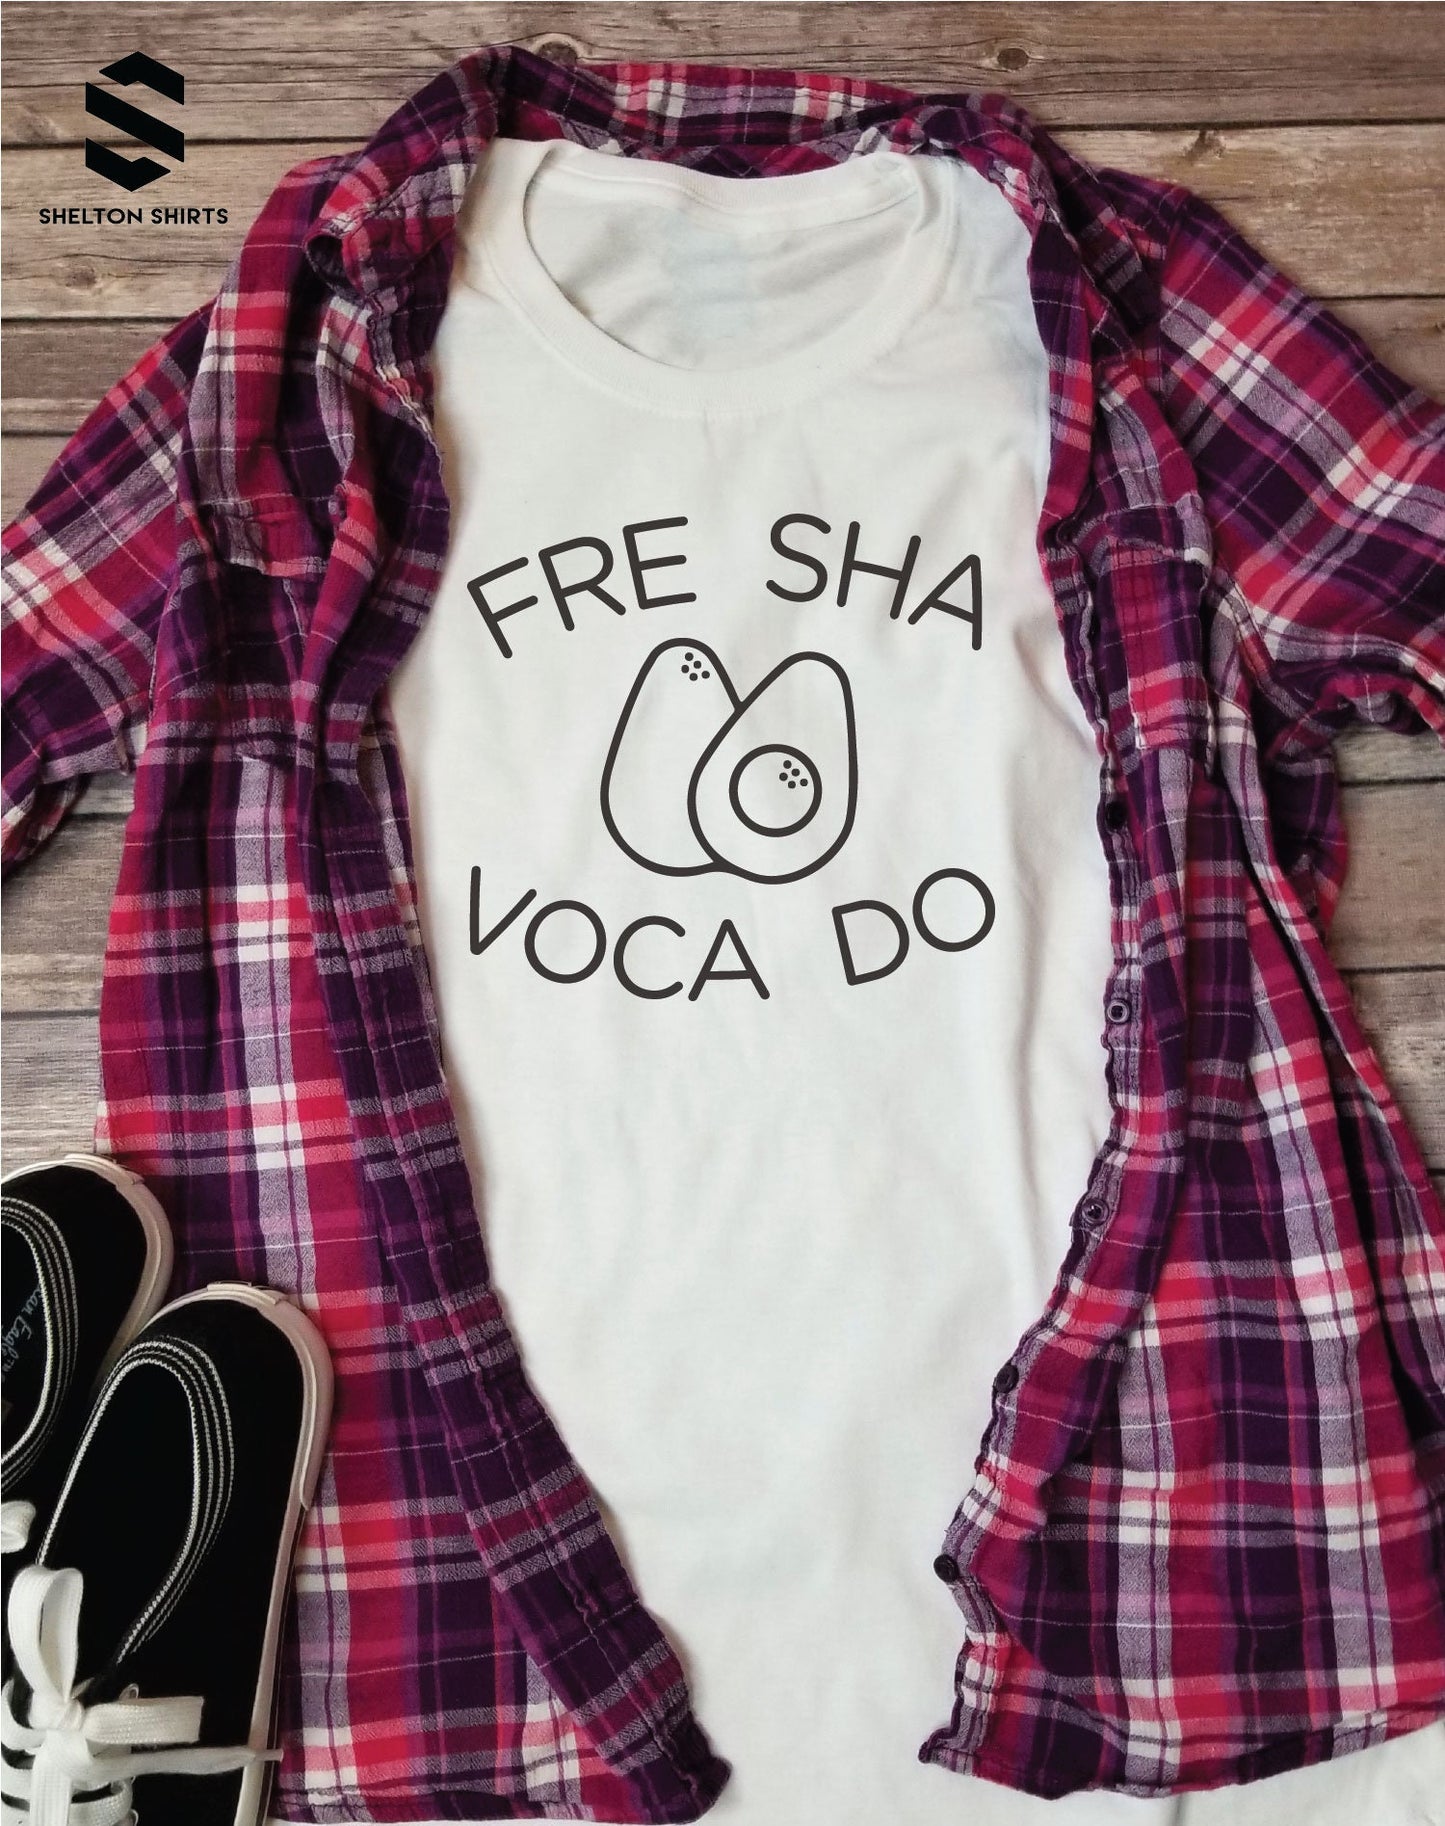 Fre Sha Voca Do on Super Soft Heather Grey Cotton Comfy T-Shirt